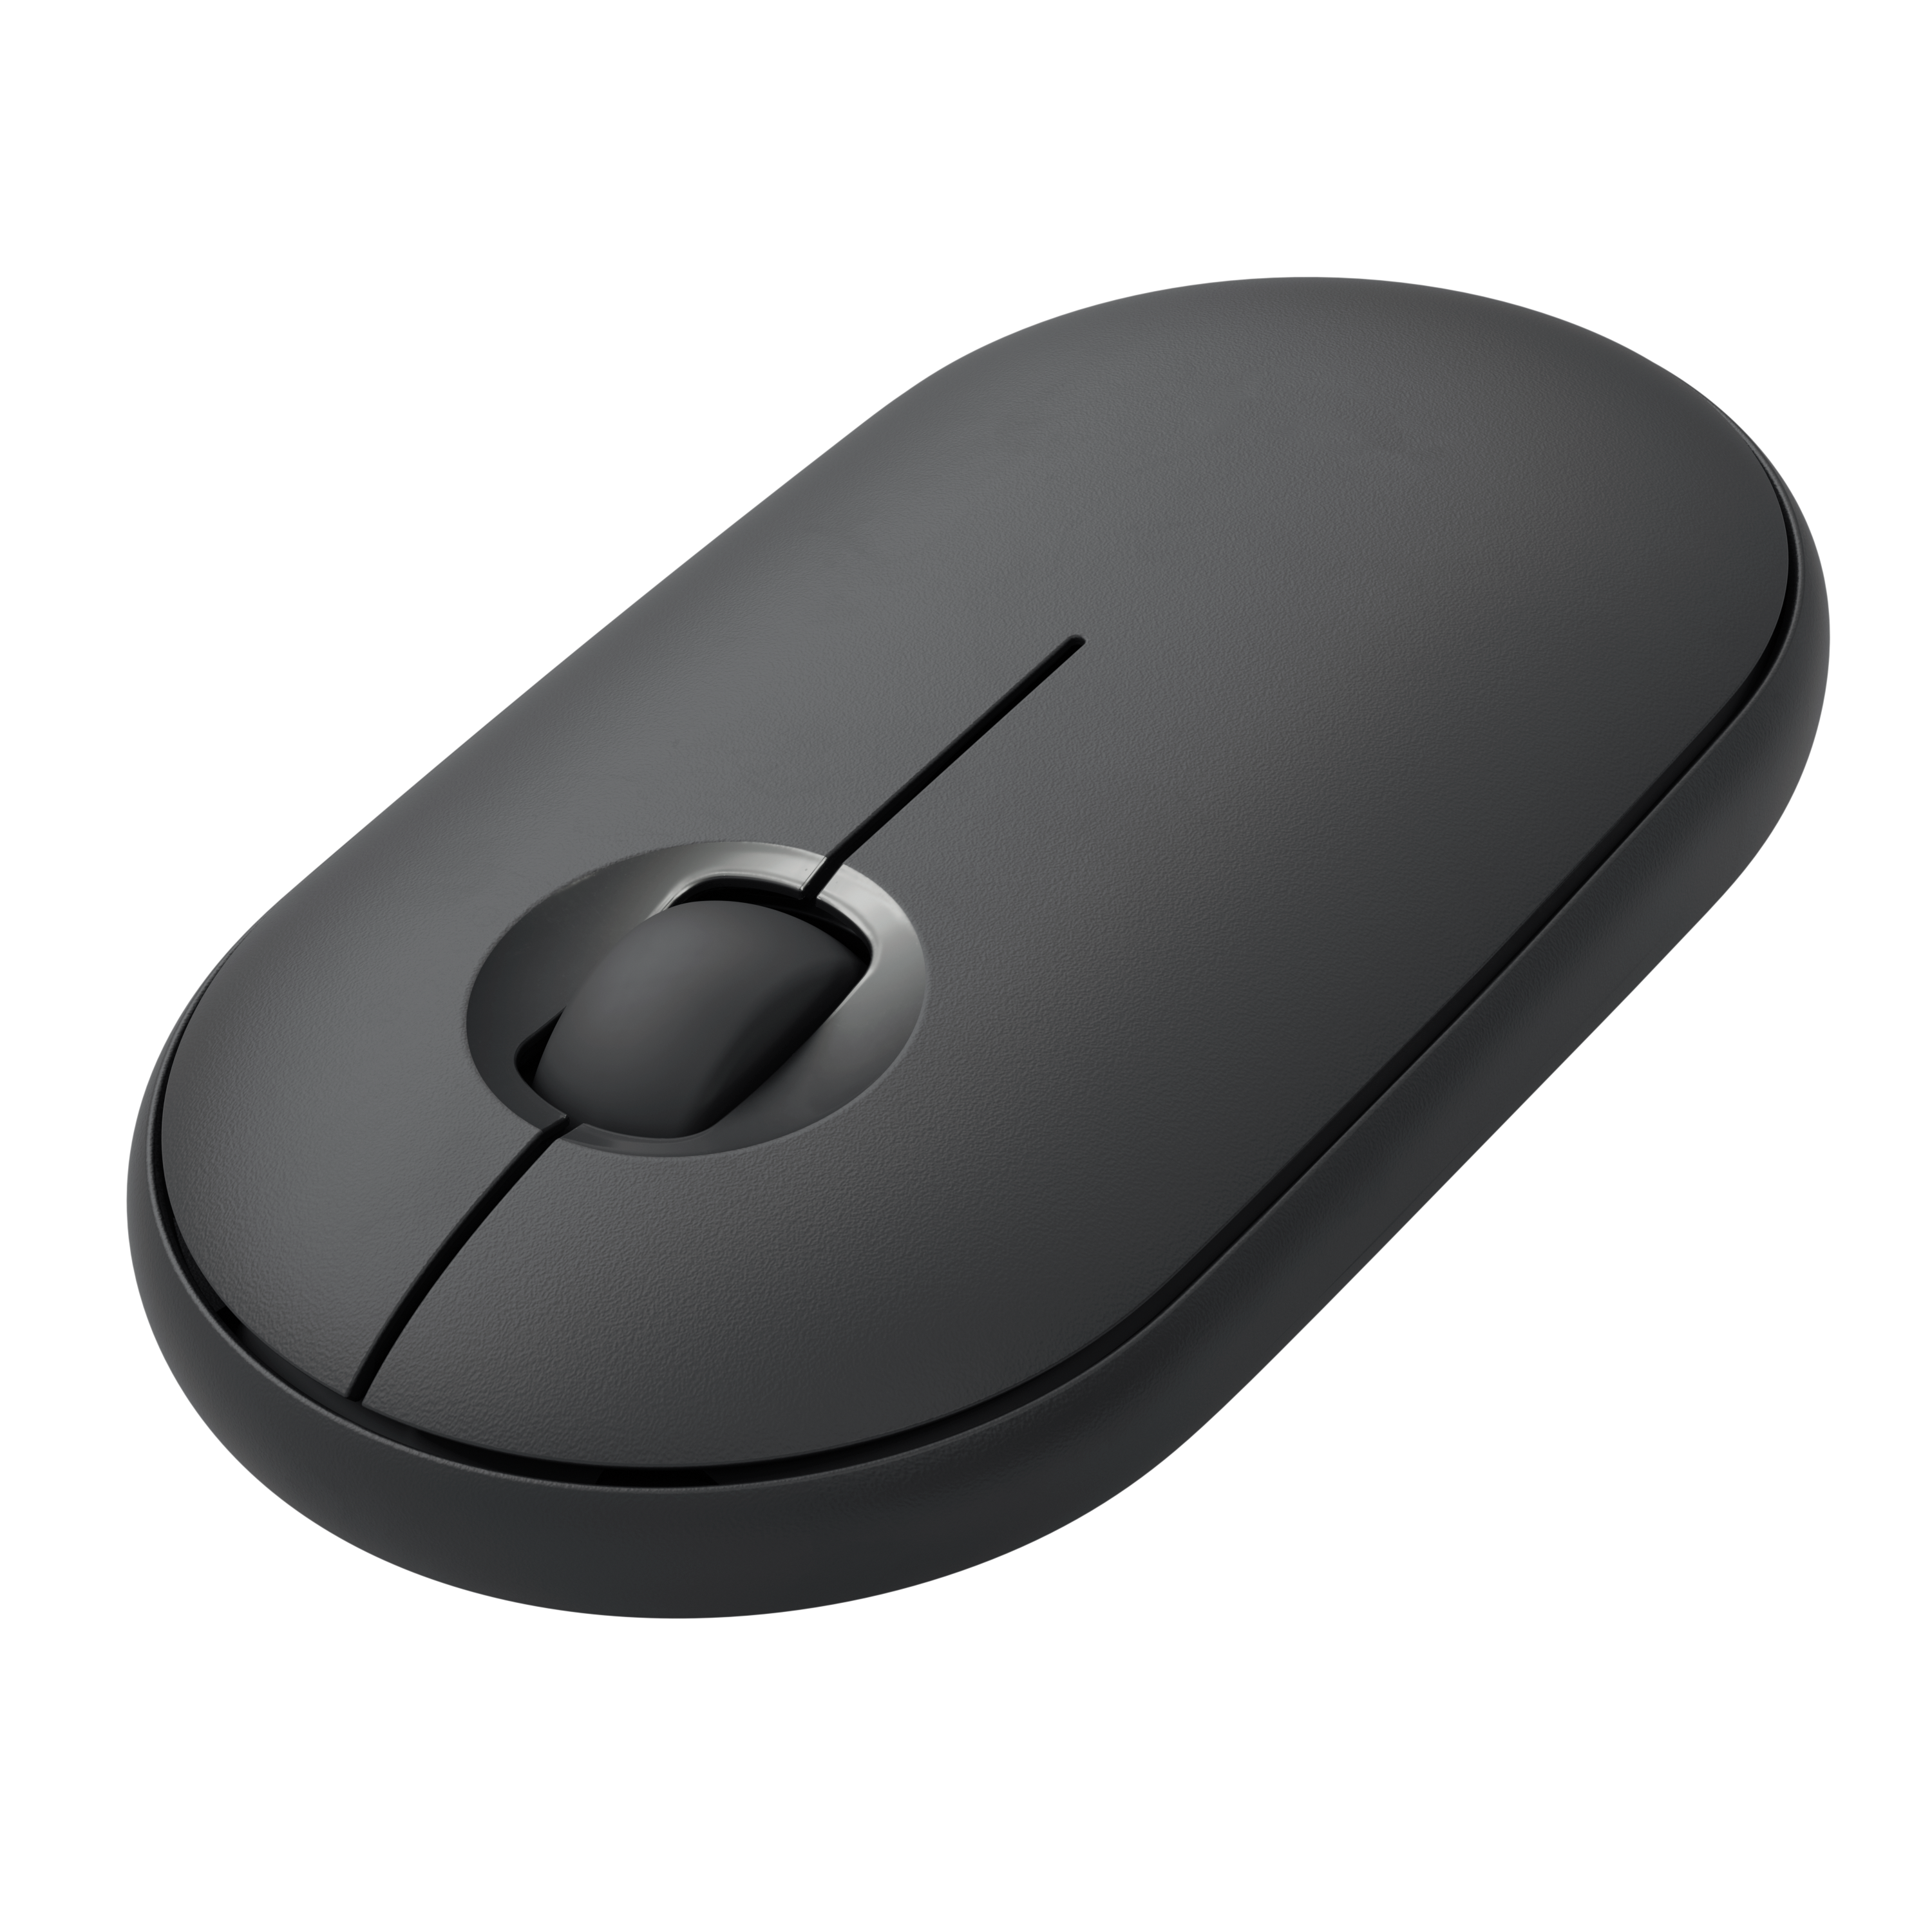 Беспроводная мышь m350 pebble. Logitech m350. Мышь беспроводная Logitech m350. Мышь Logitech Pebble m350. Logitech Pebble m350 Wireless Mouse Graphite.